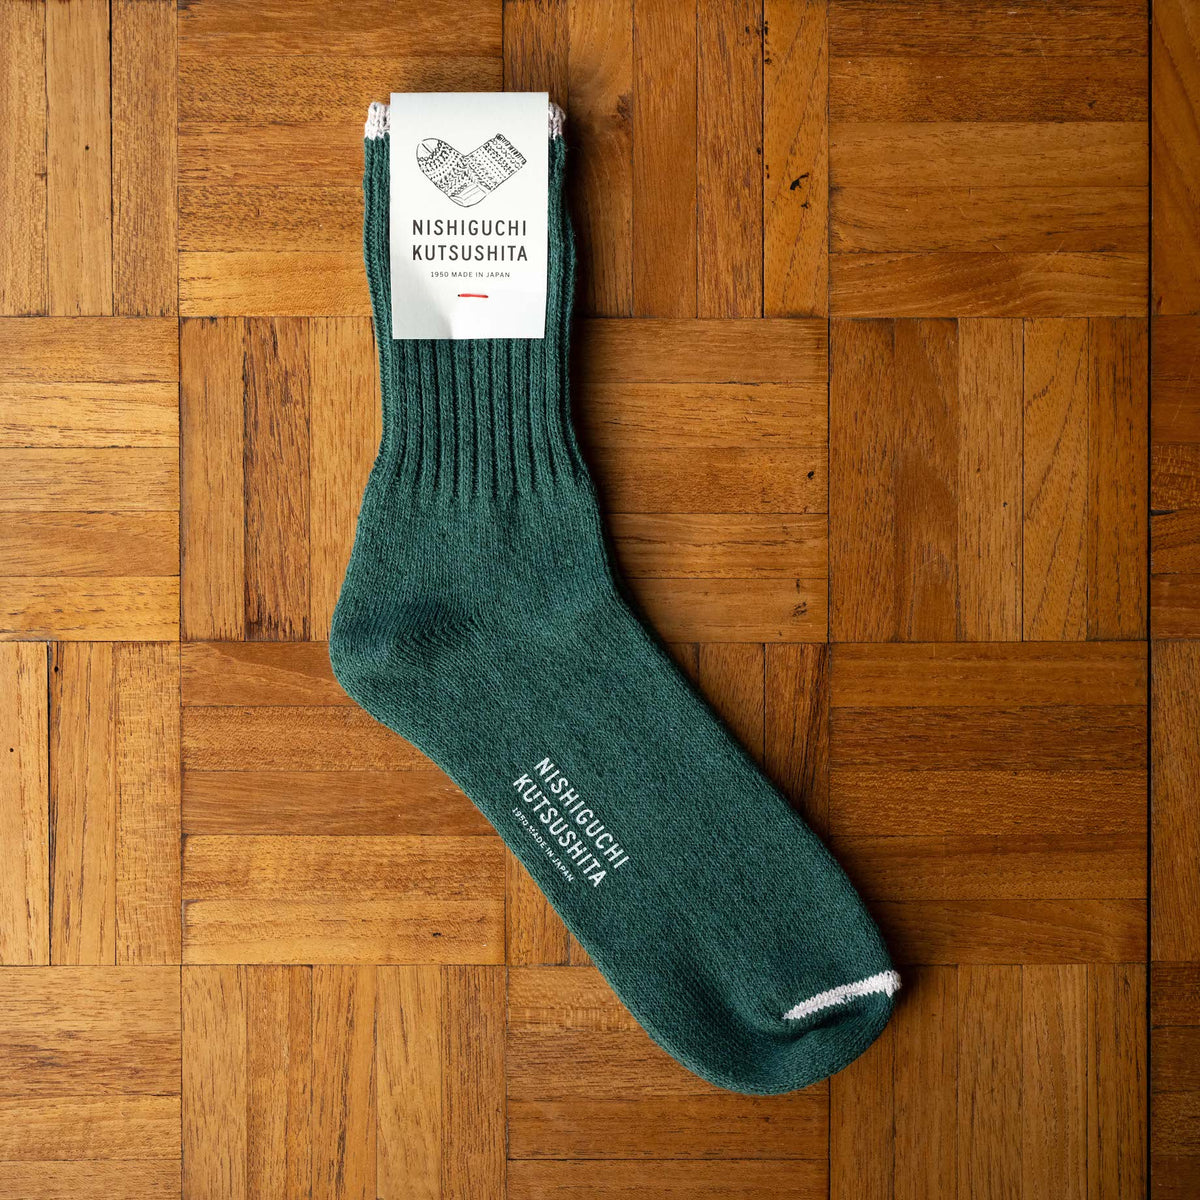 Nishiguchi Kutsushita Silk Cotton Socks in Amazon Green Colourway